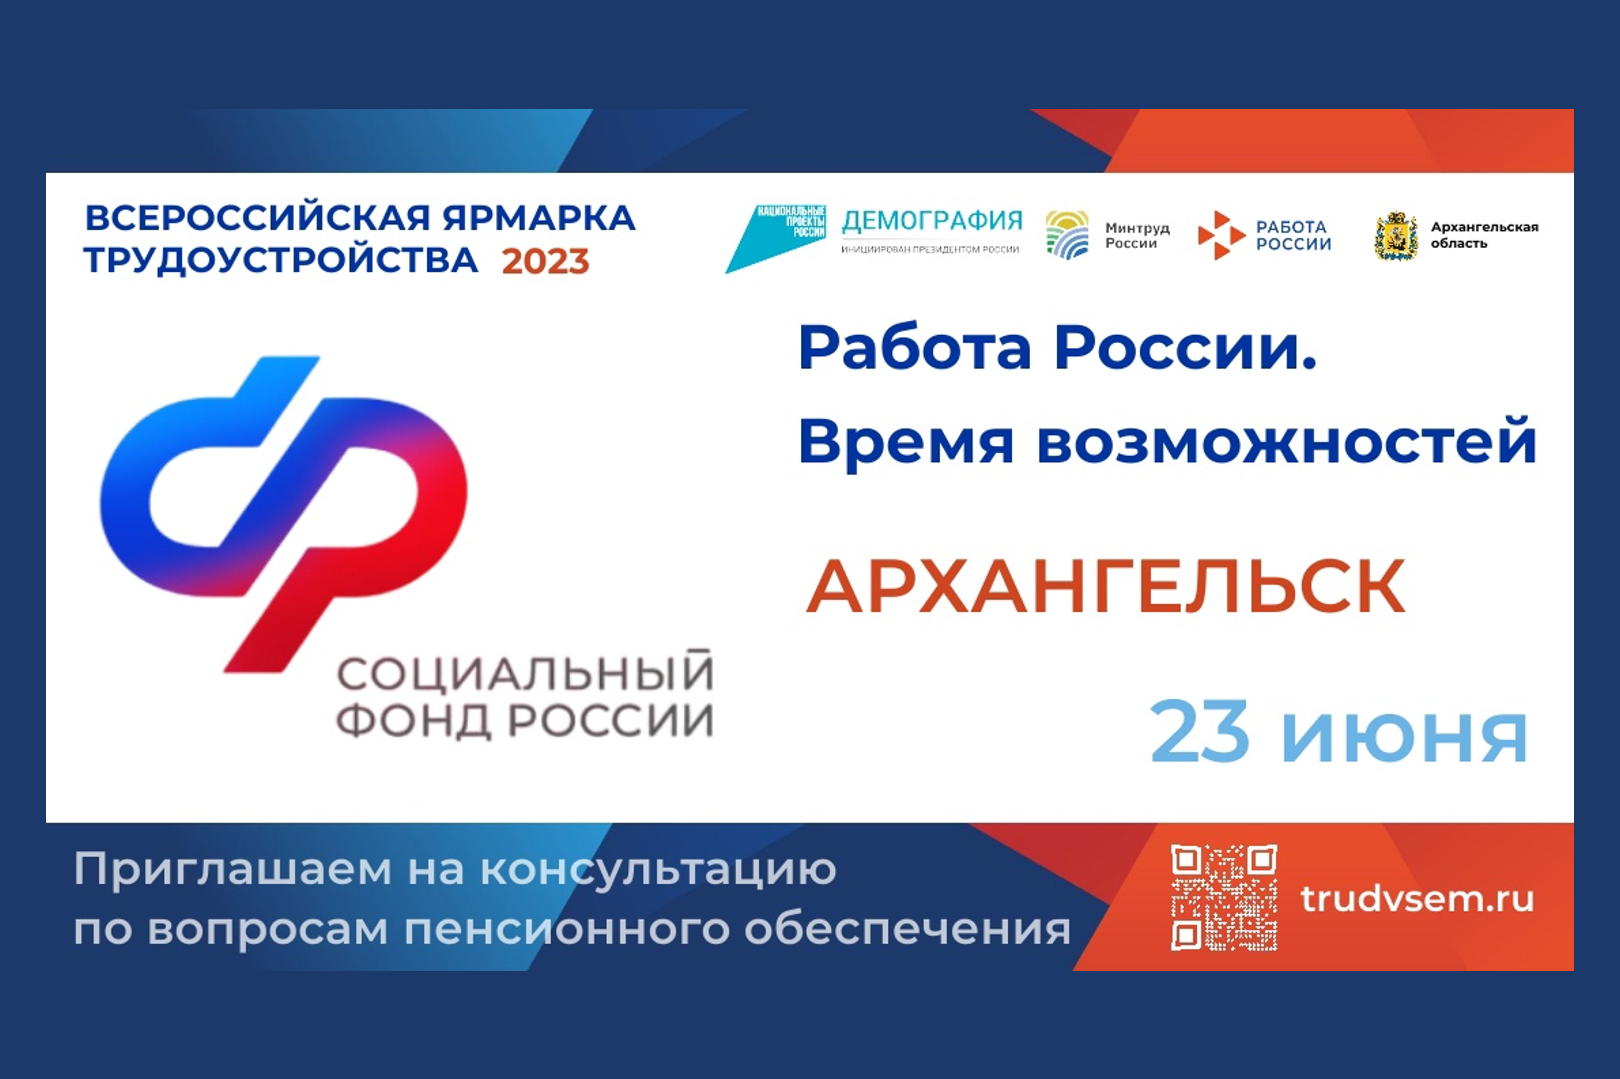 Кадровый центр по городу Архангельску приглашает на консультацию по вопросам пенсионного обеспечения